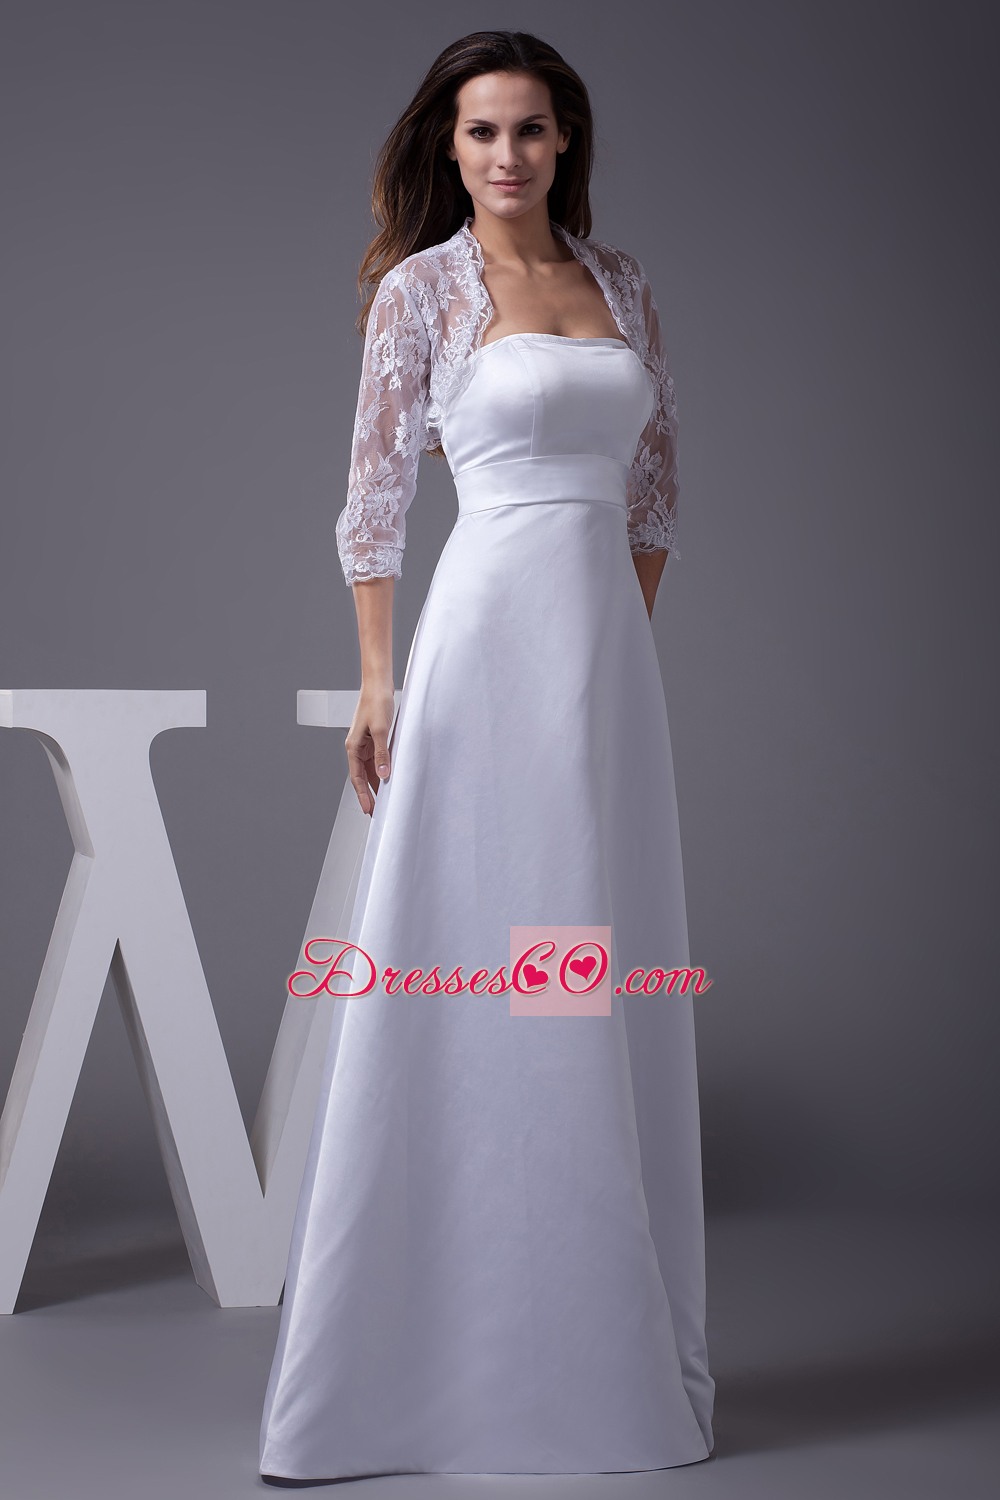 Strapless A-line Long Wedding Dress